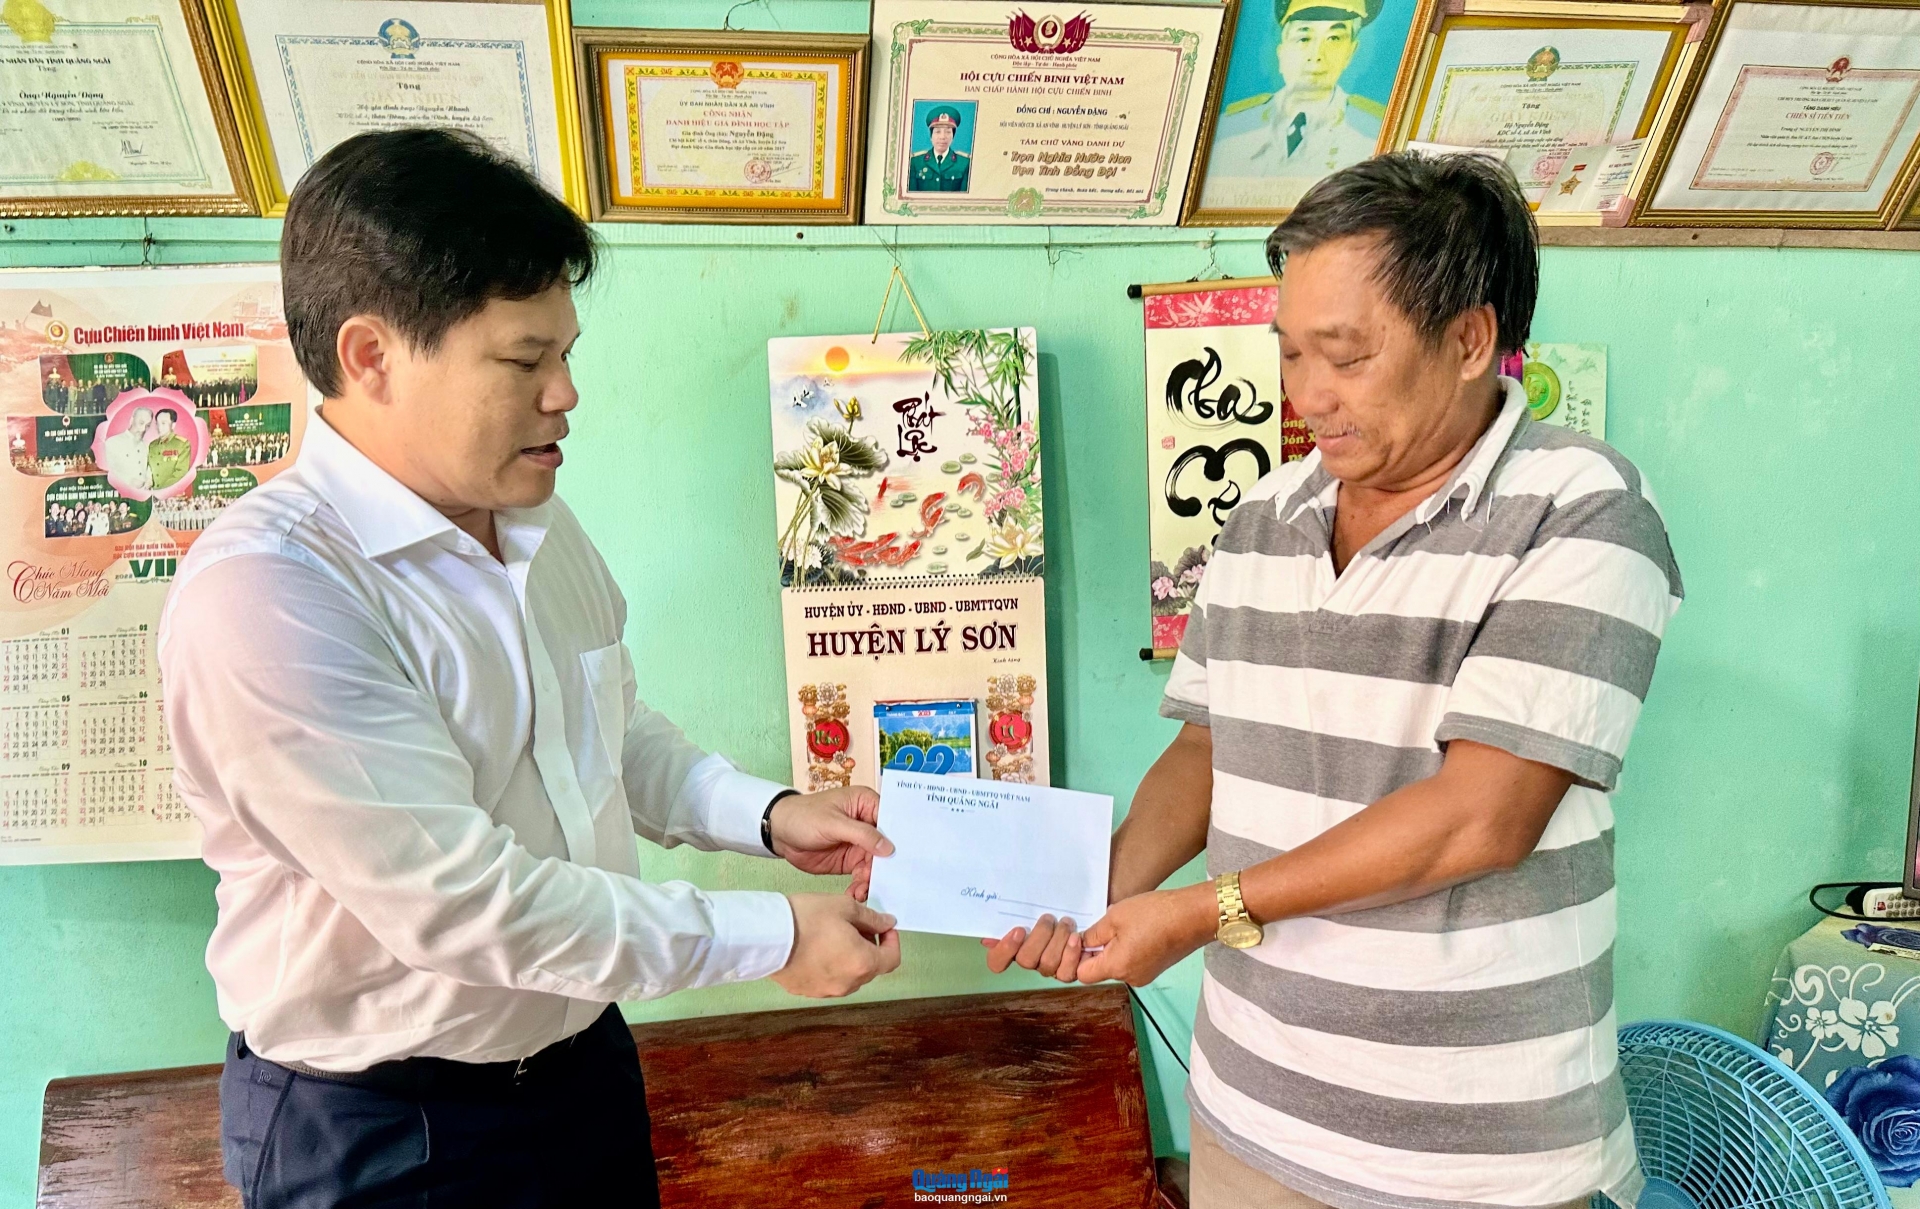 Phó Chủ tịch UBND tỉnh Trần Phước Hiền thăm hỏi, tặng quà thương binh Nguyễn Đặng ở thôn Đông An Vĩnh.